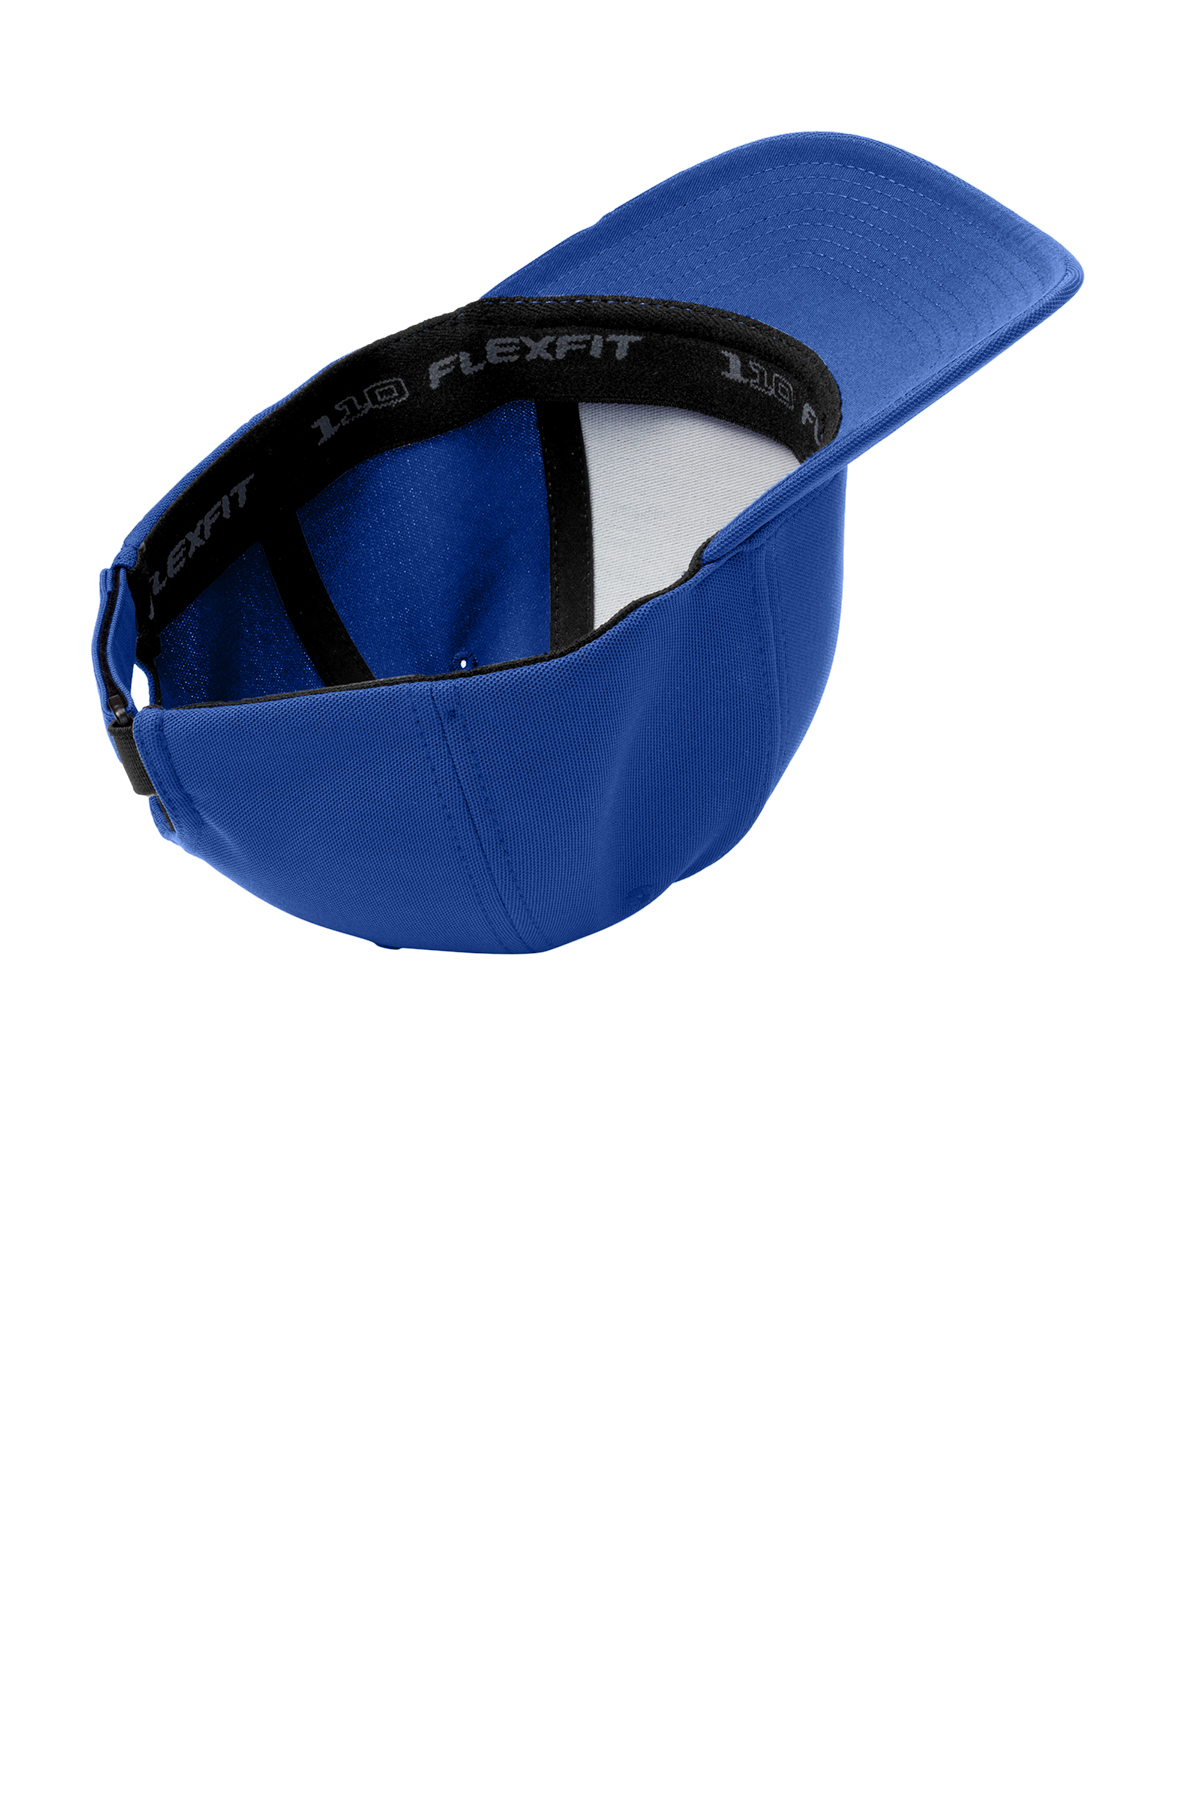 Gorra Flexfit Snapback 6089M Azul Oscuro - Oto Caps